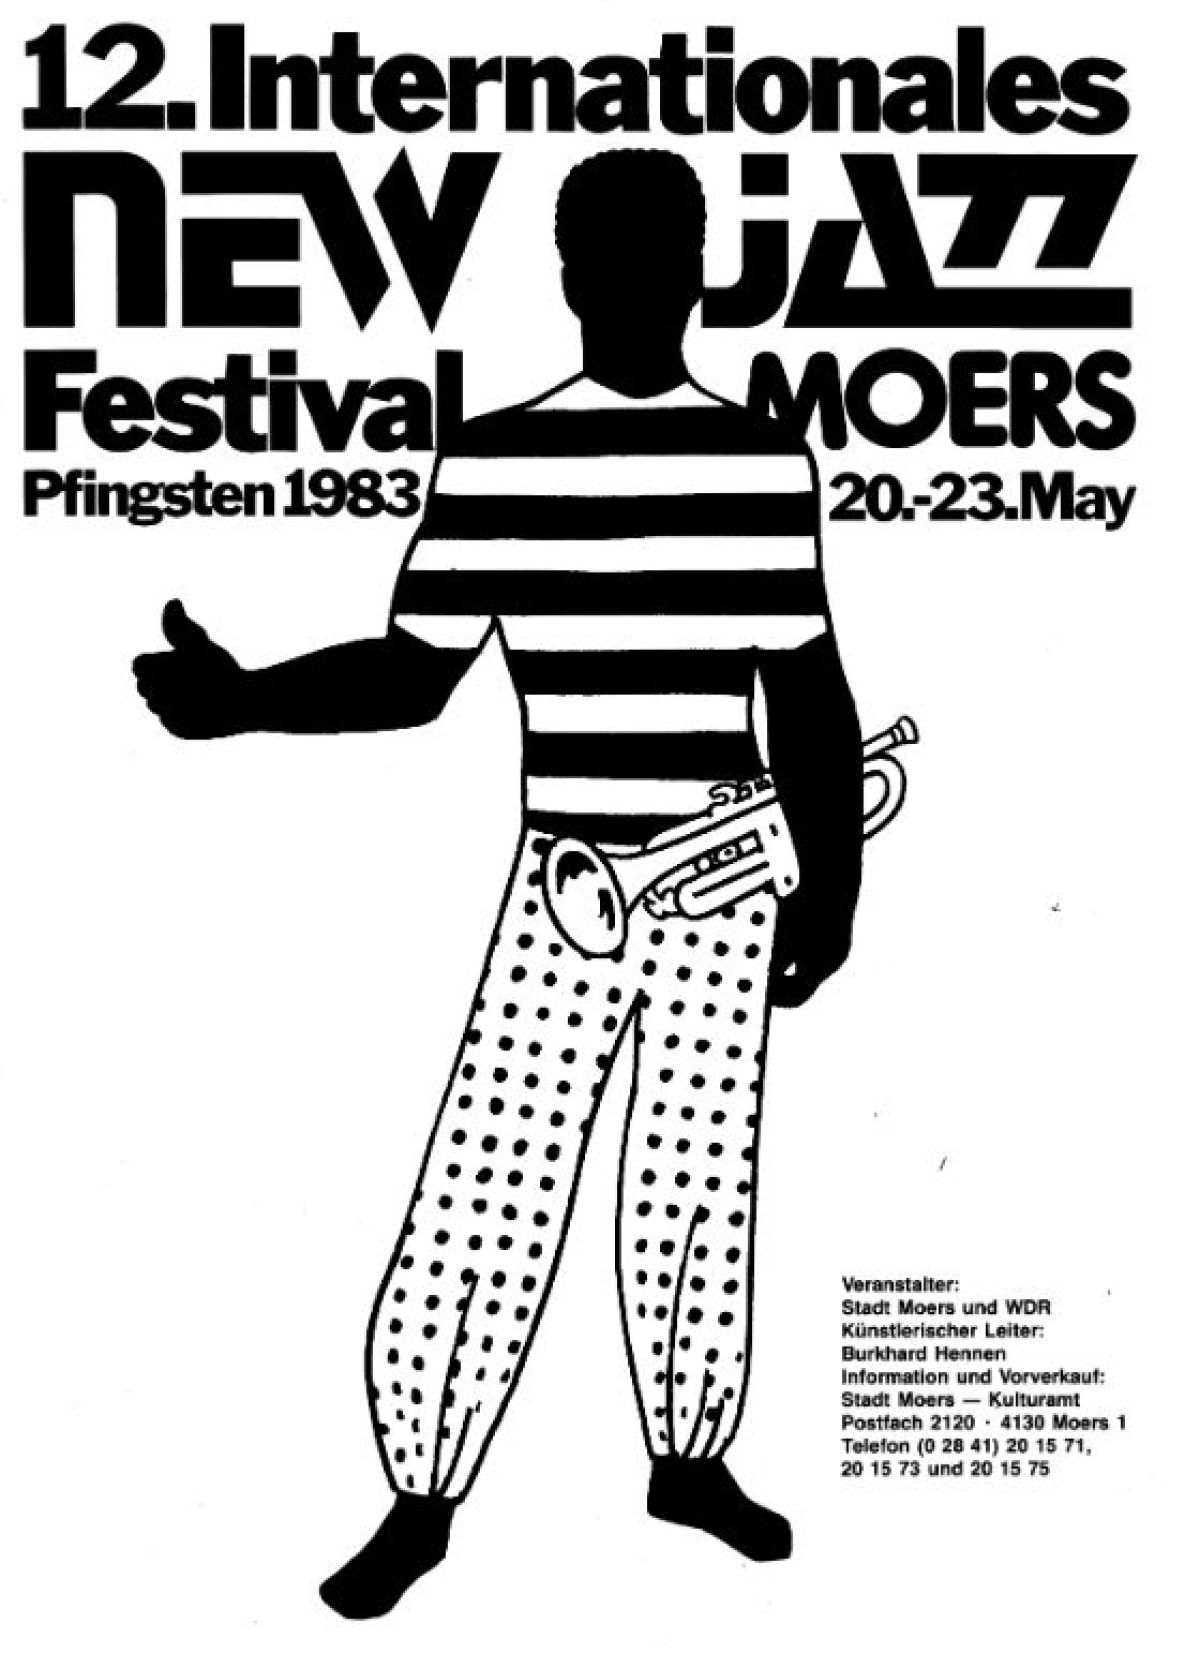 Festival-Plakat 1983